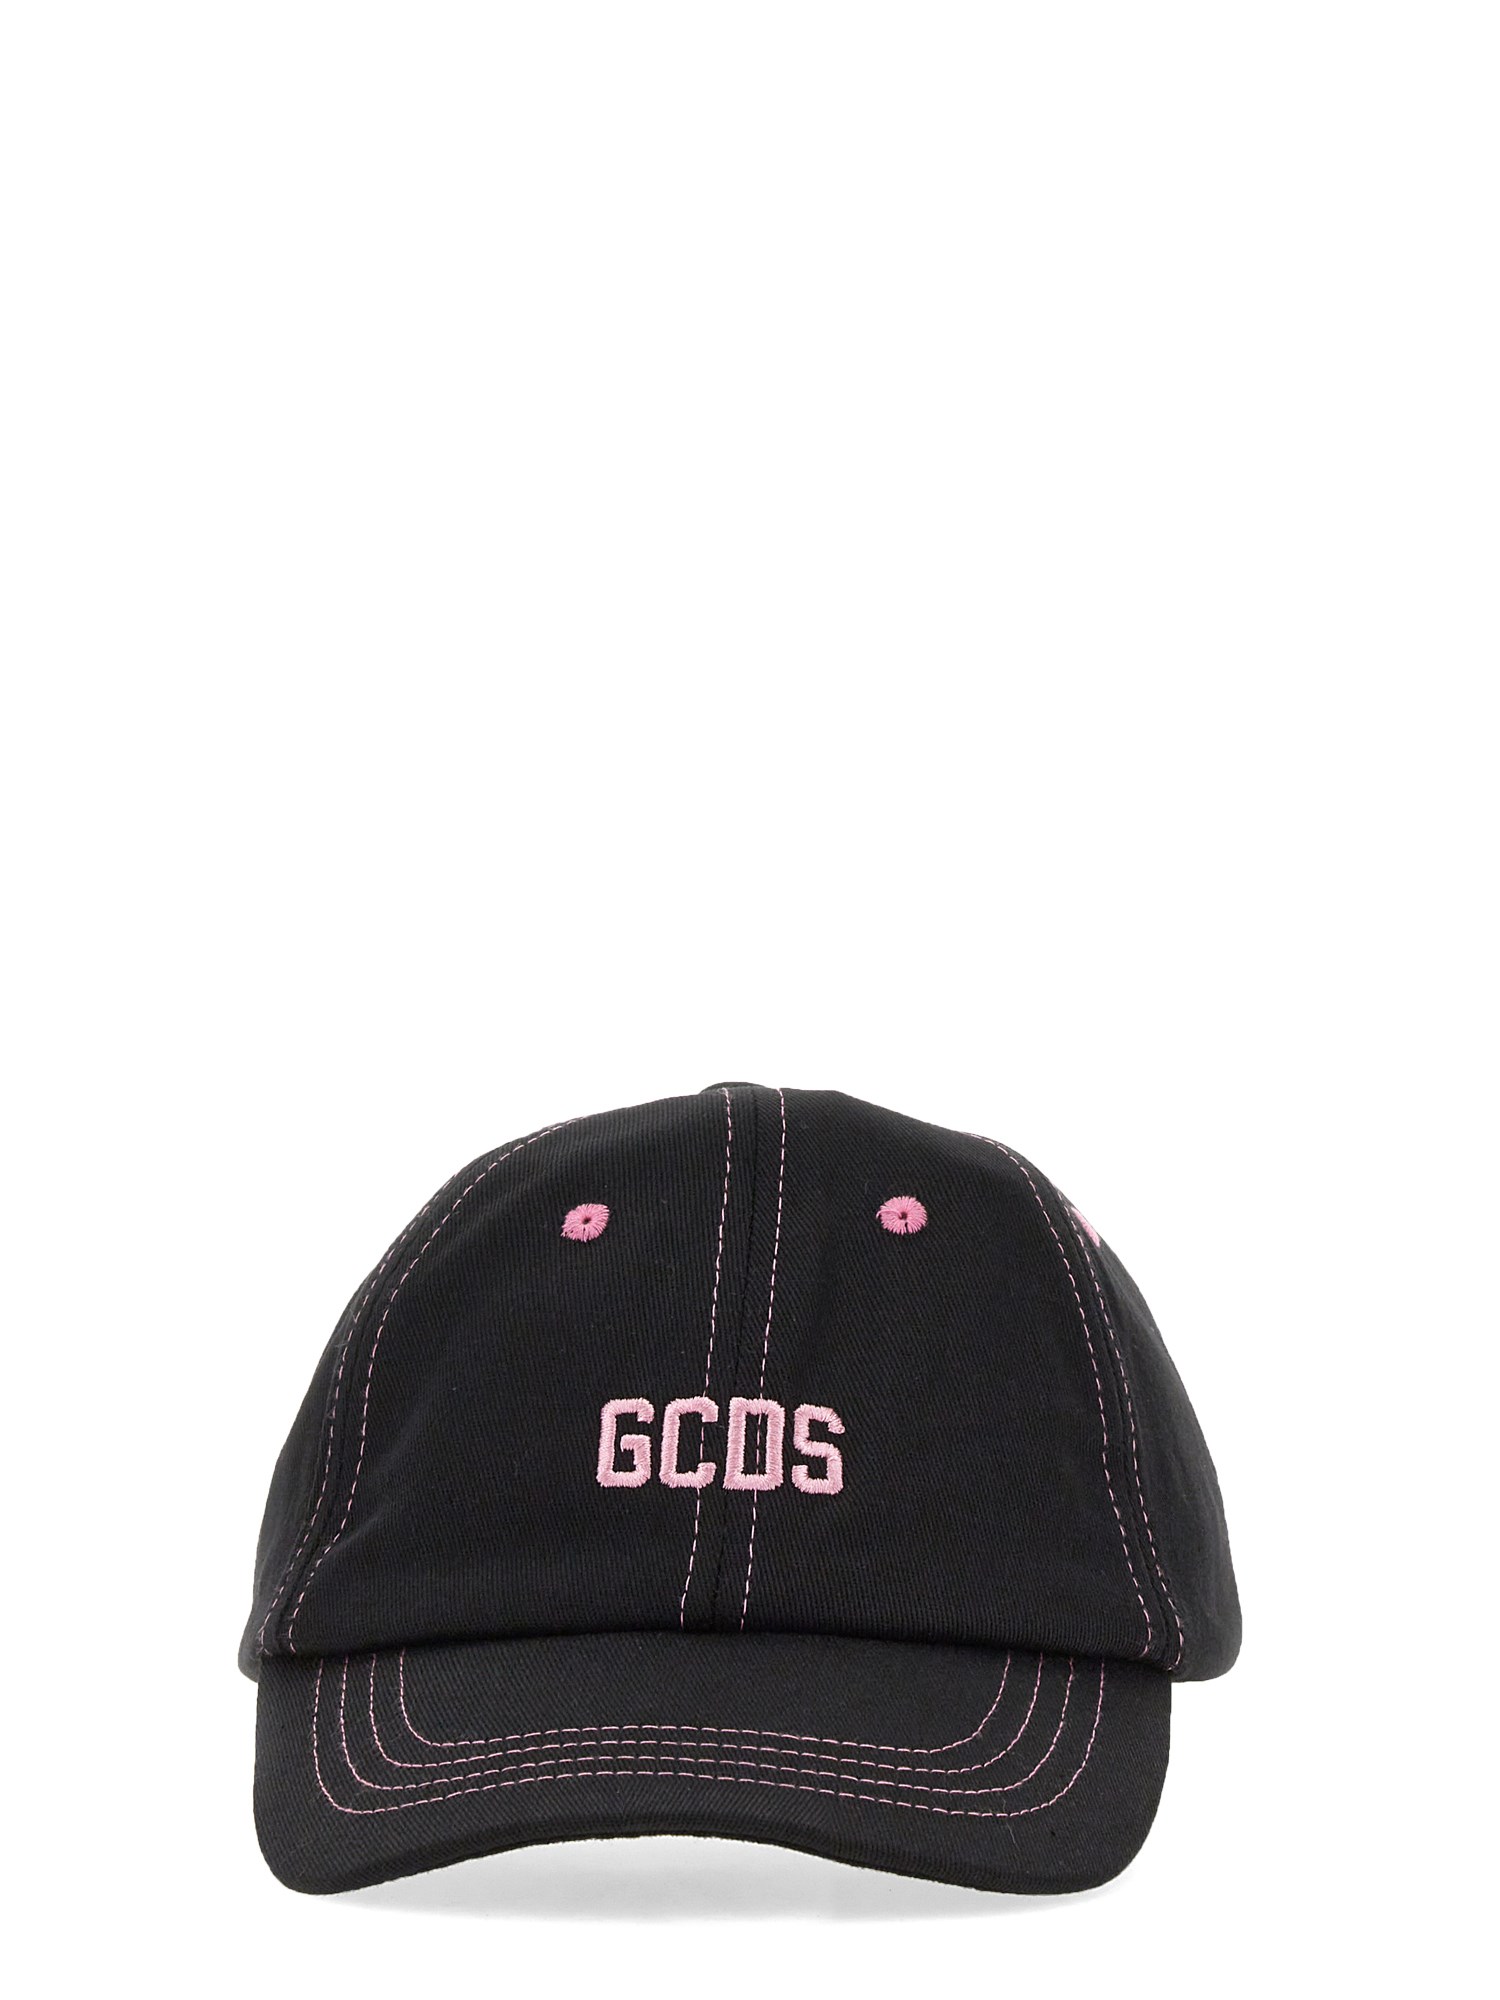 gcds baseball hat essential